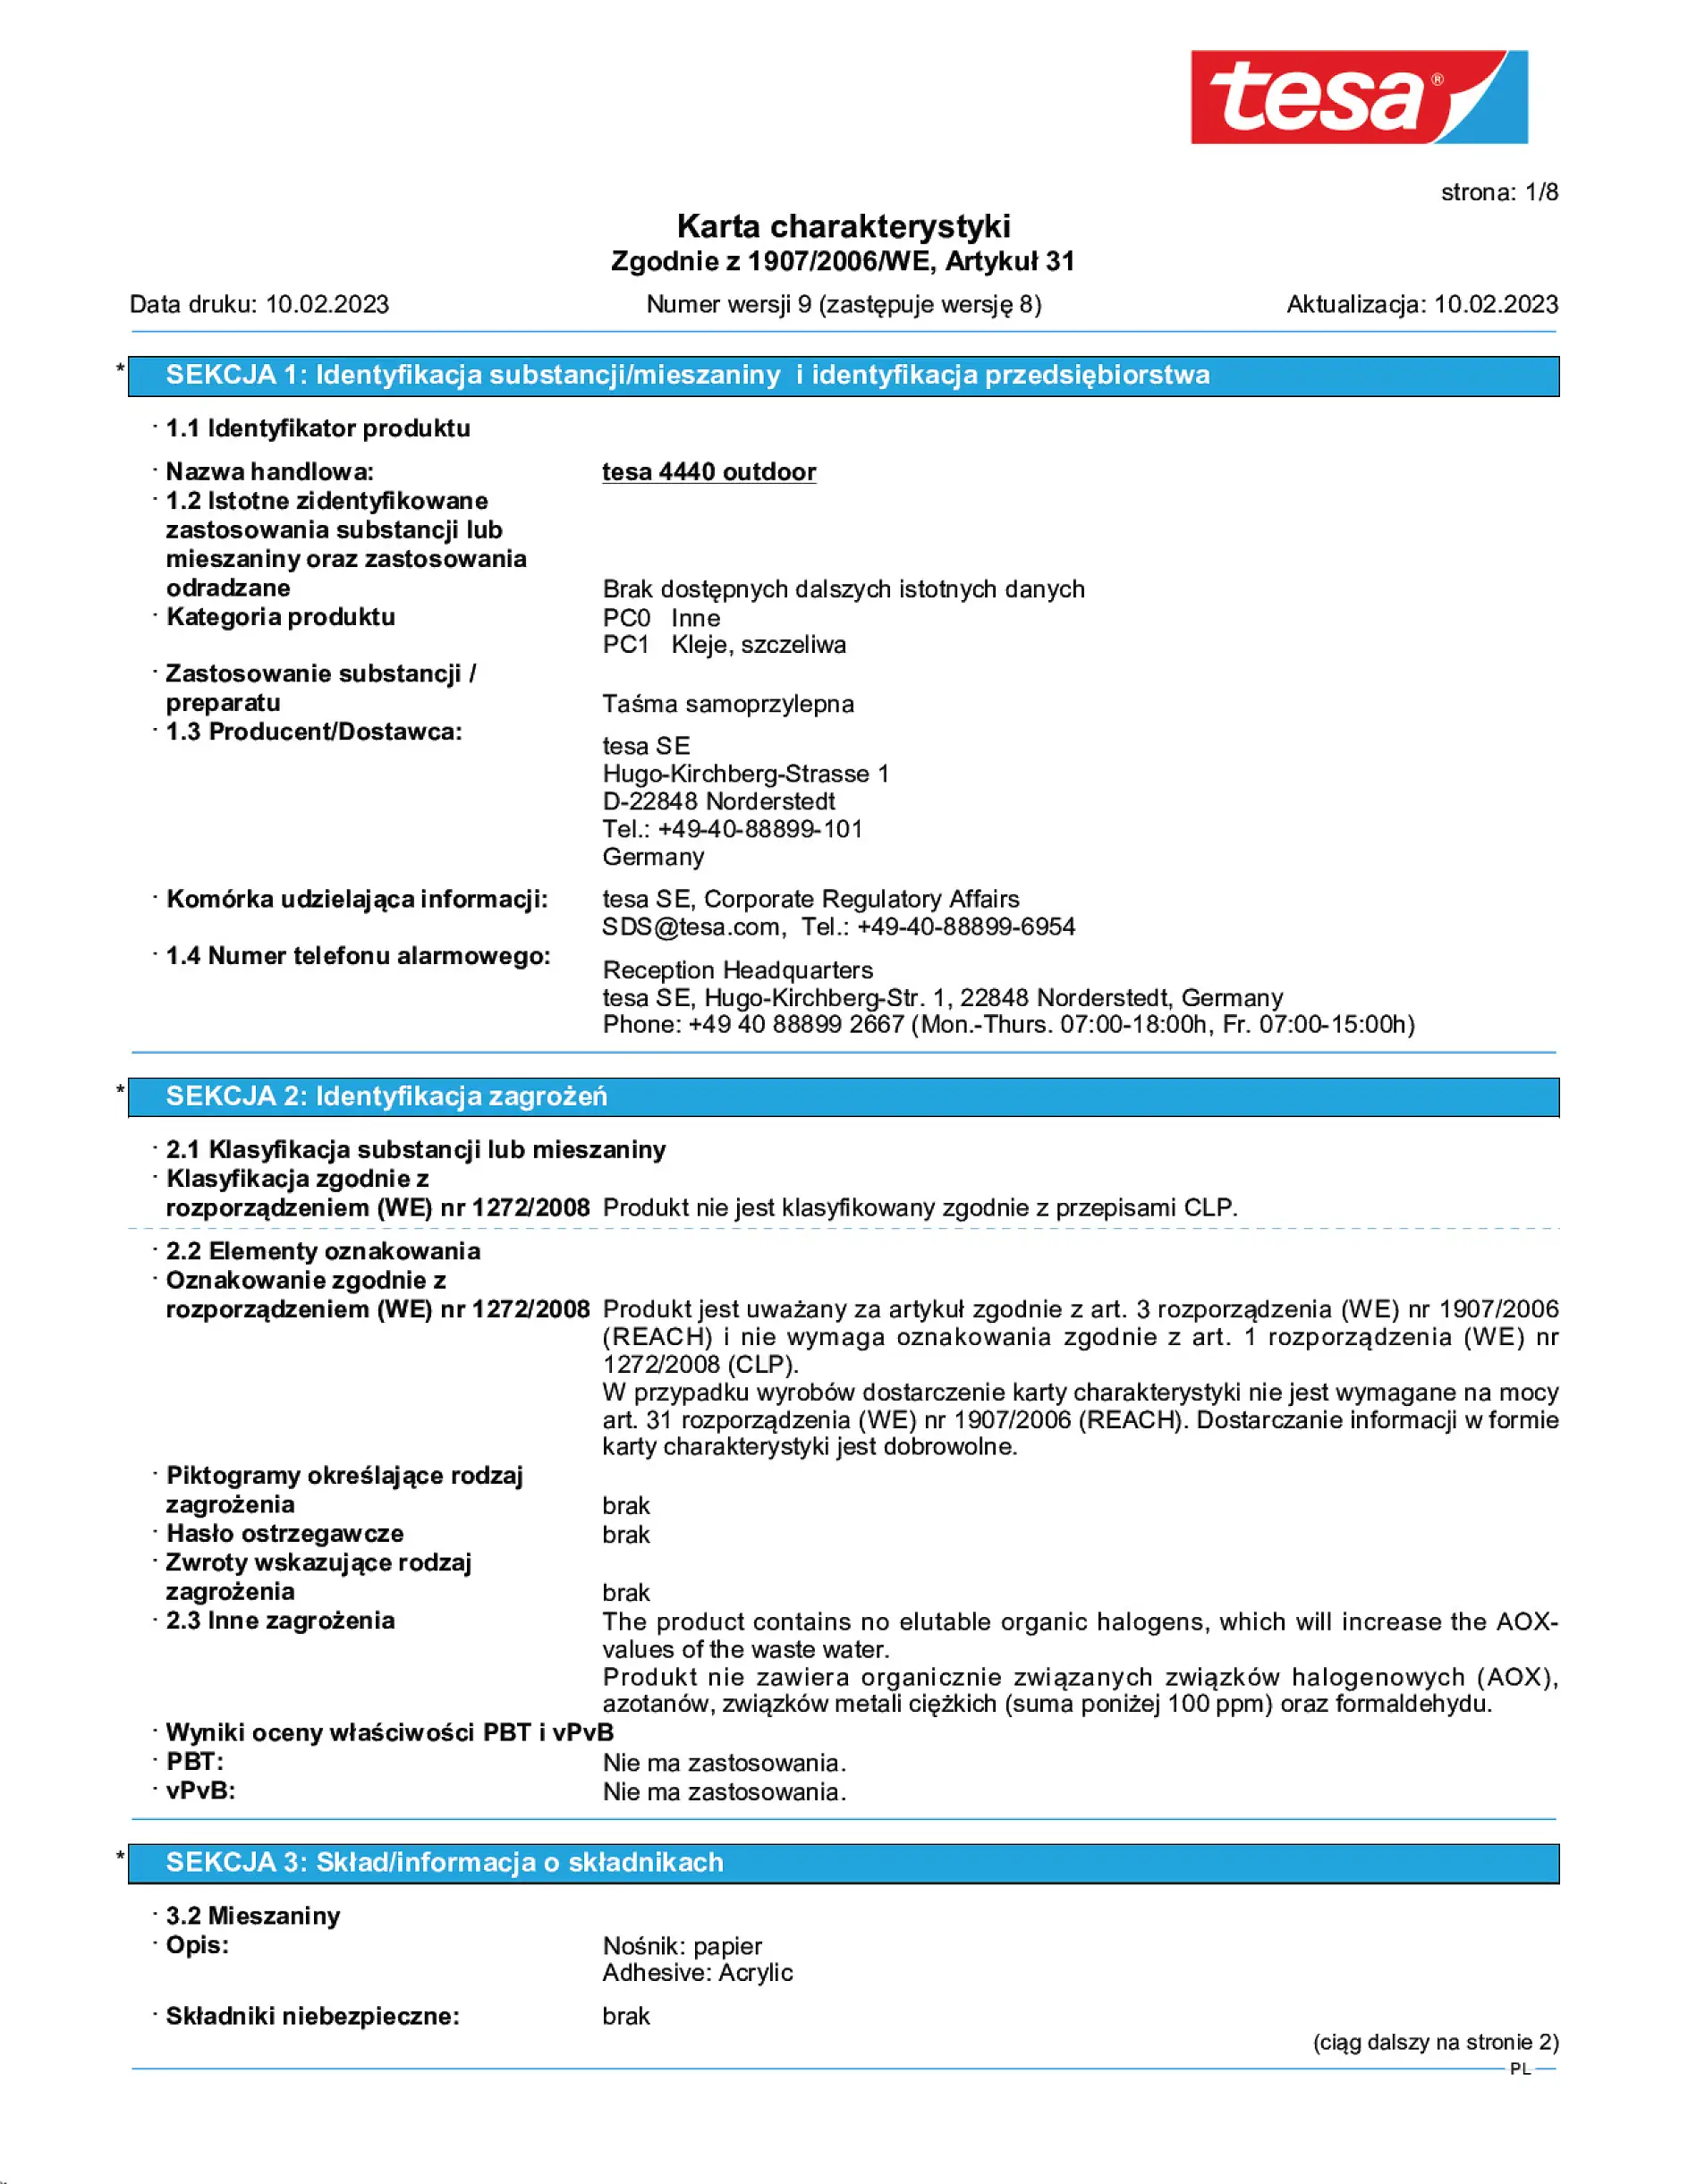 Safety data sheet_tesa® Professional 04440_pl-PL_v9